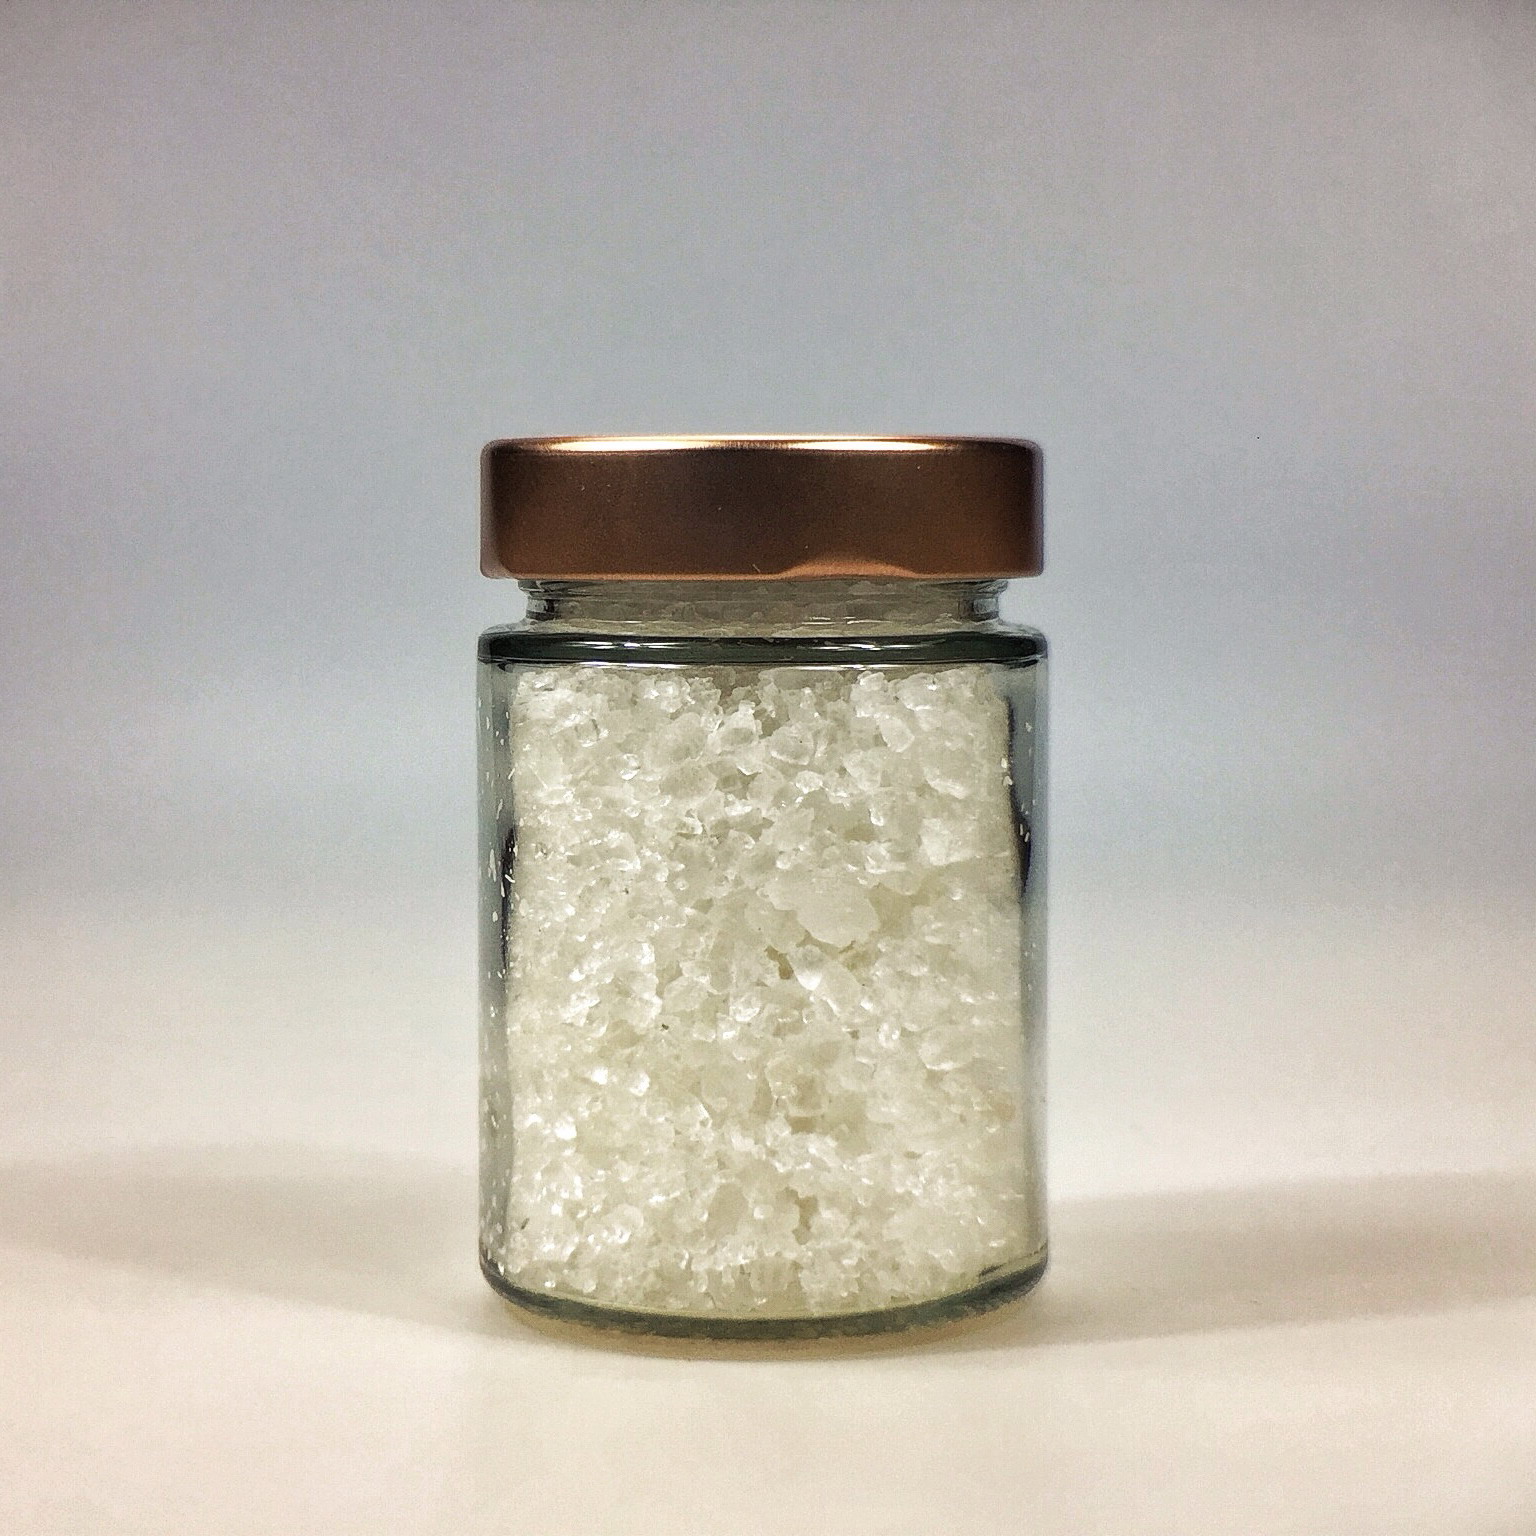 Halit Salz grob gemahlen für Salzmühle im kleinen Glas mit Kupferdeckel